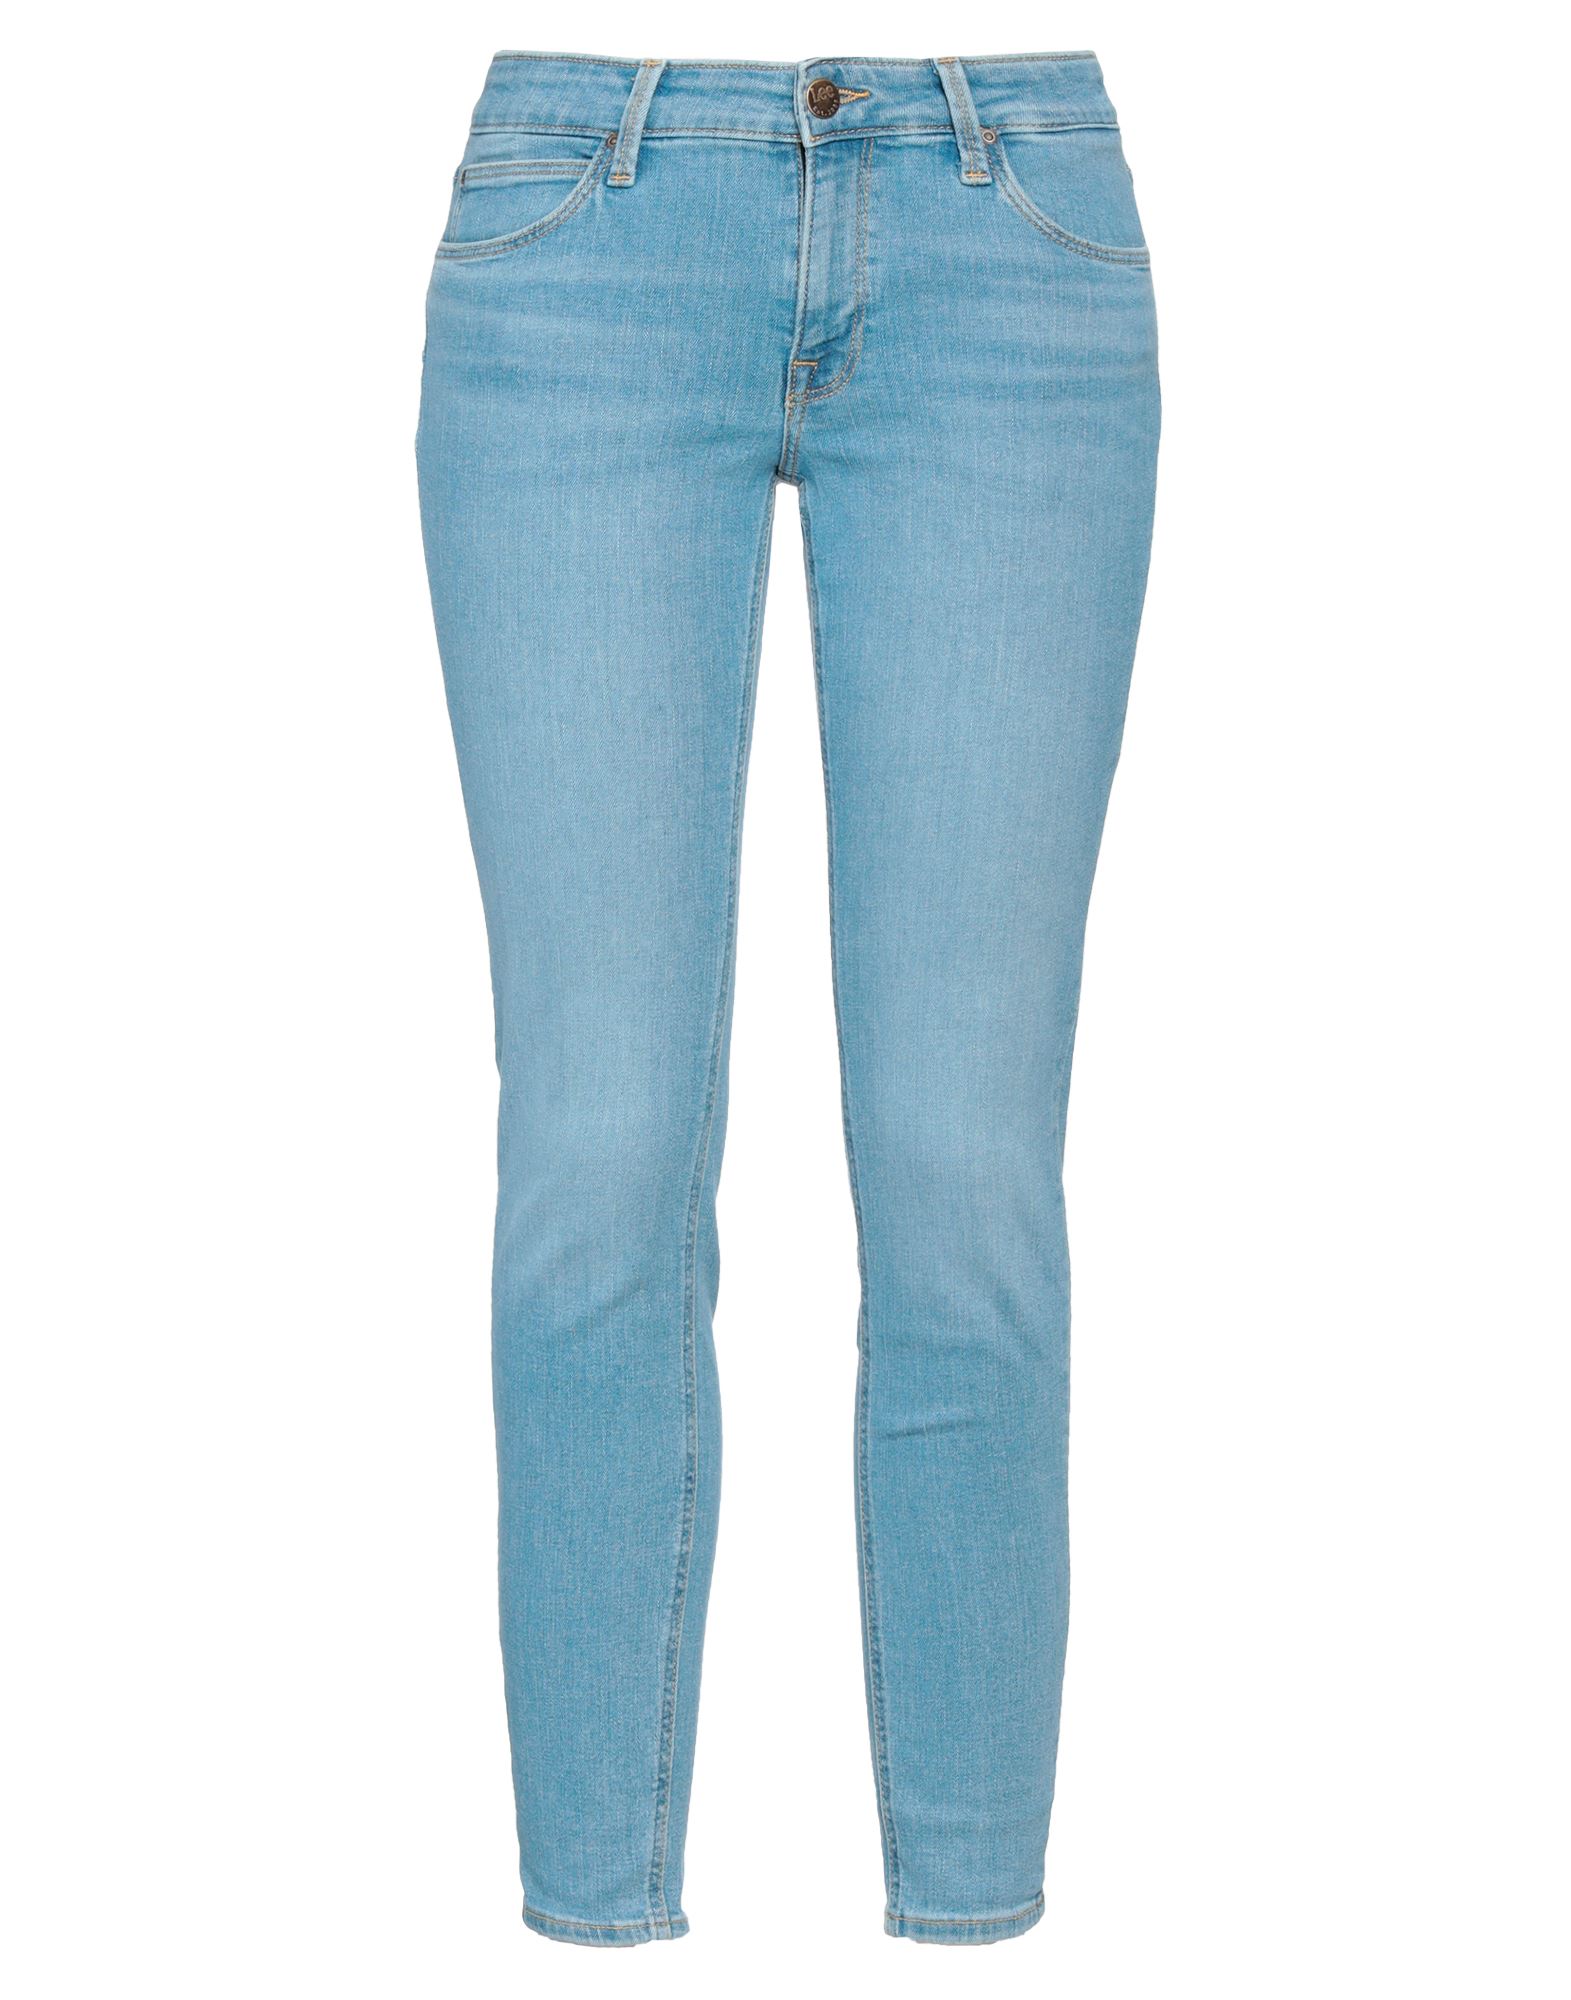 Lee Woman Jeans Blue Size 30w-31l Cotton, Polyethylene, Elastane